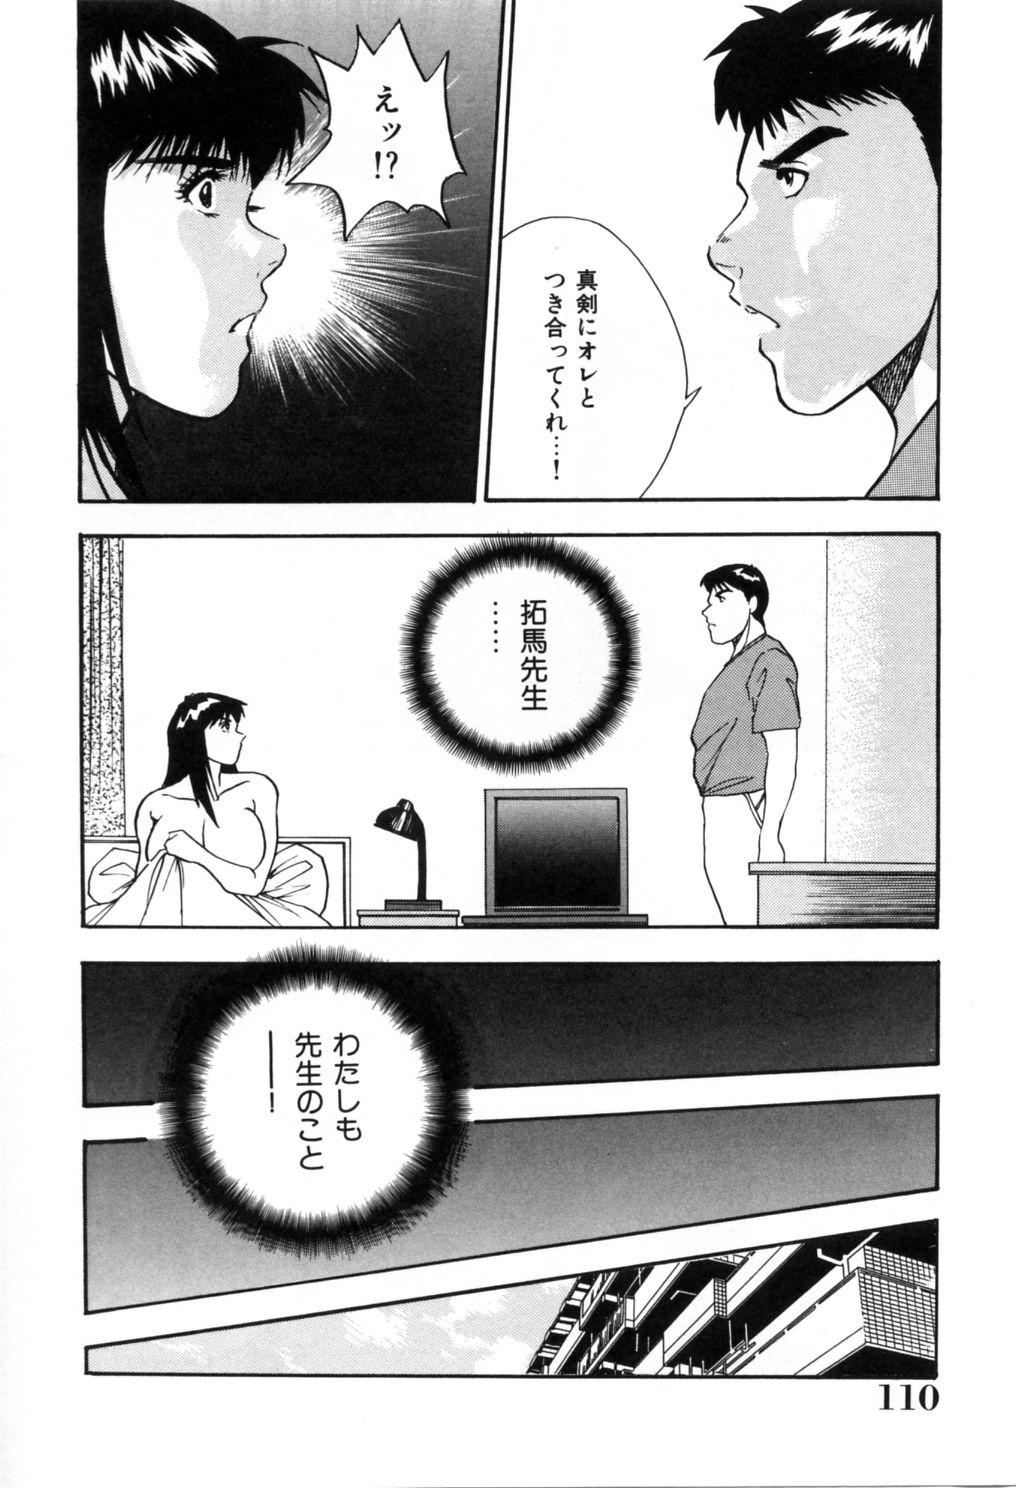 [Aduki Amaguri] Gozen 0-ji no Cinderella - Midnight Cinderella 114